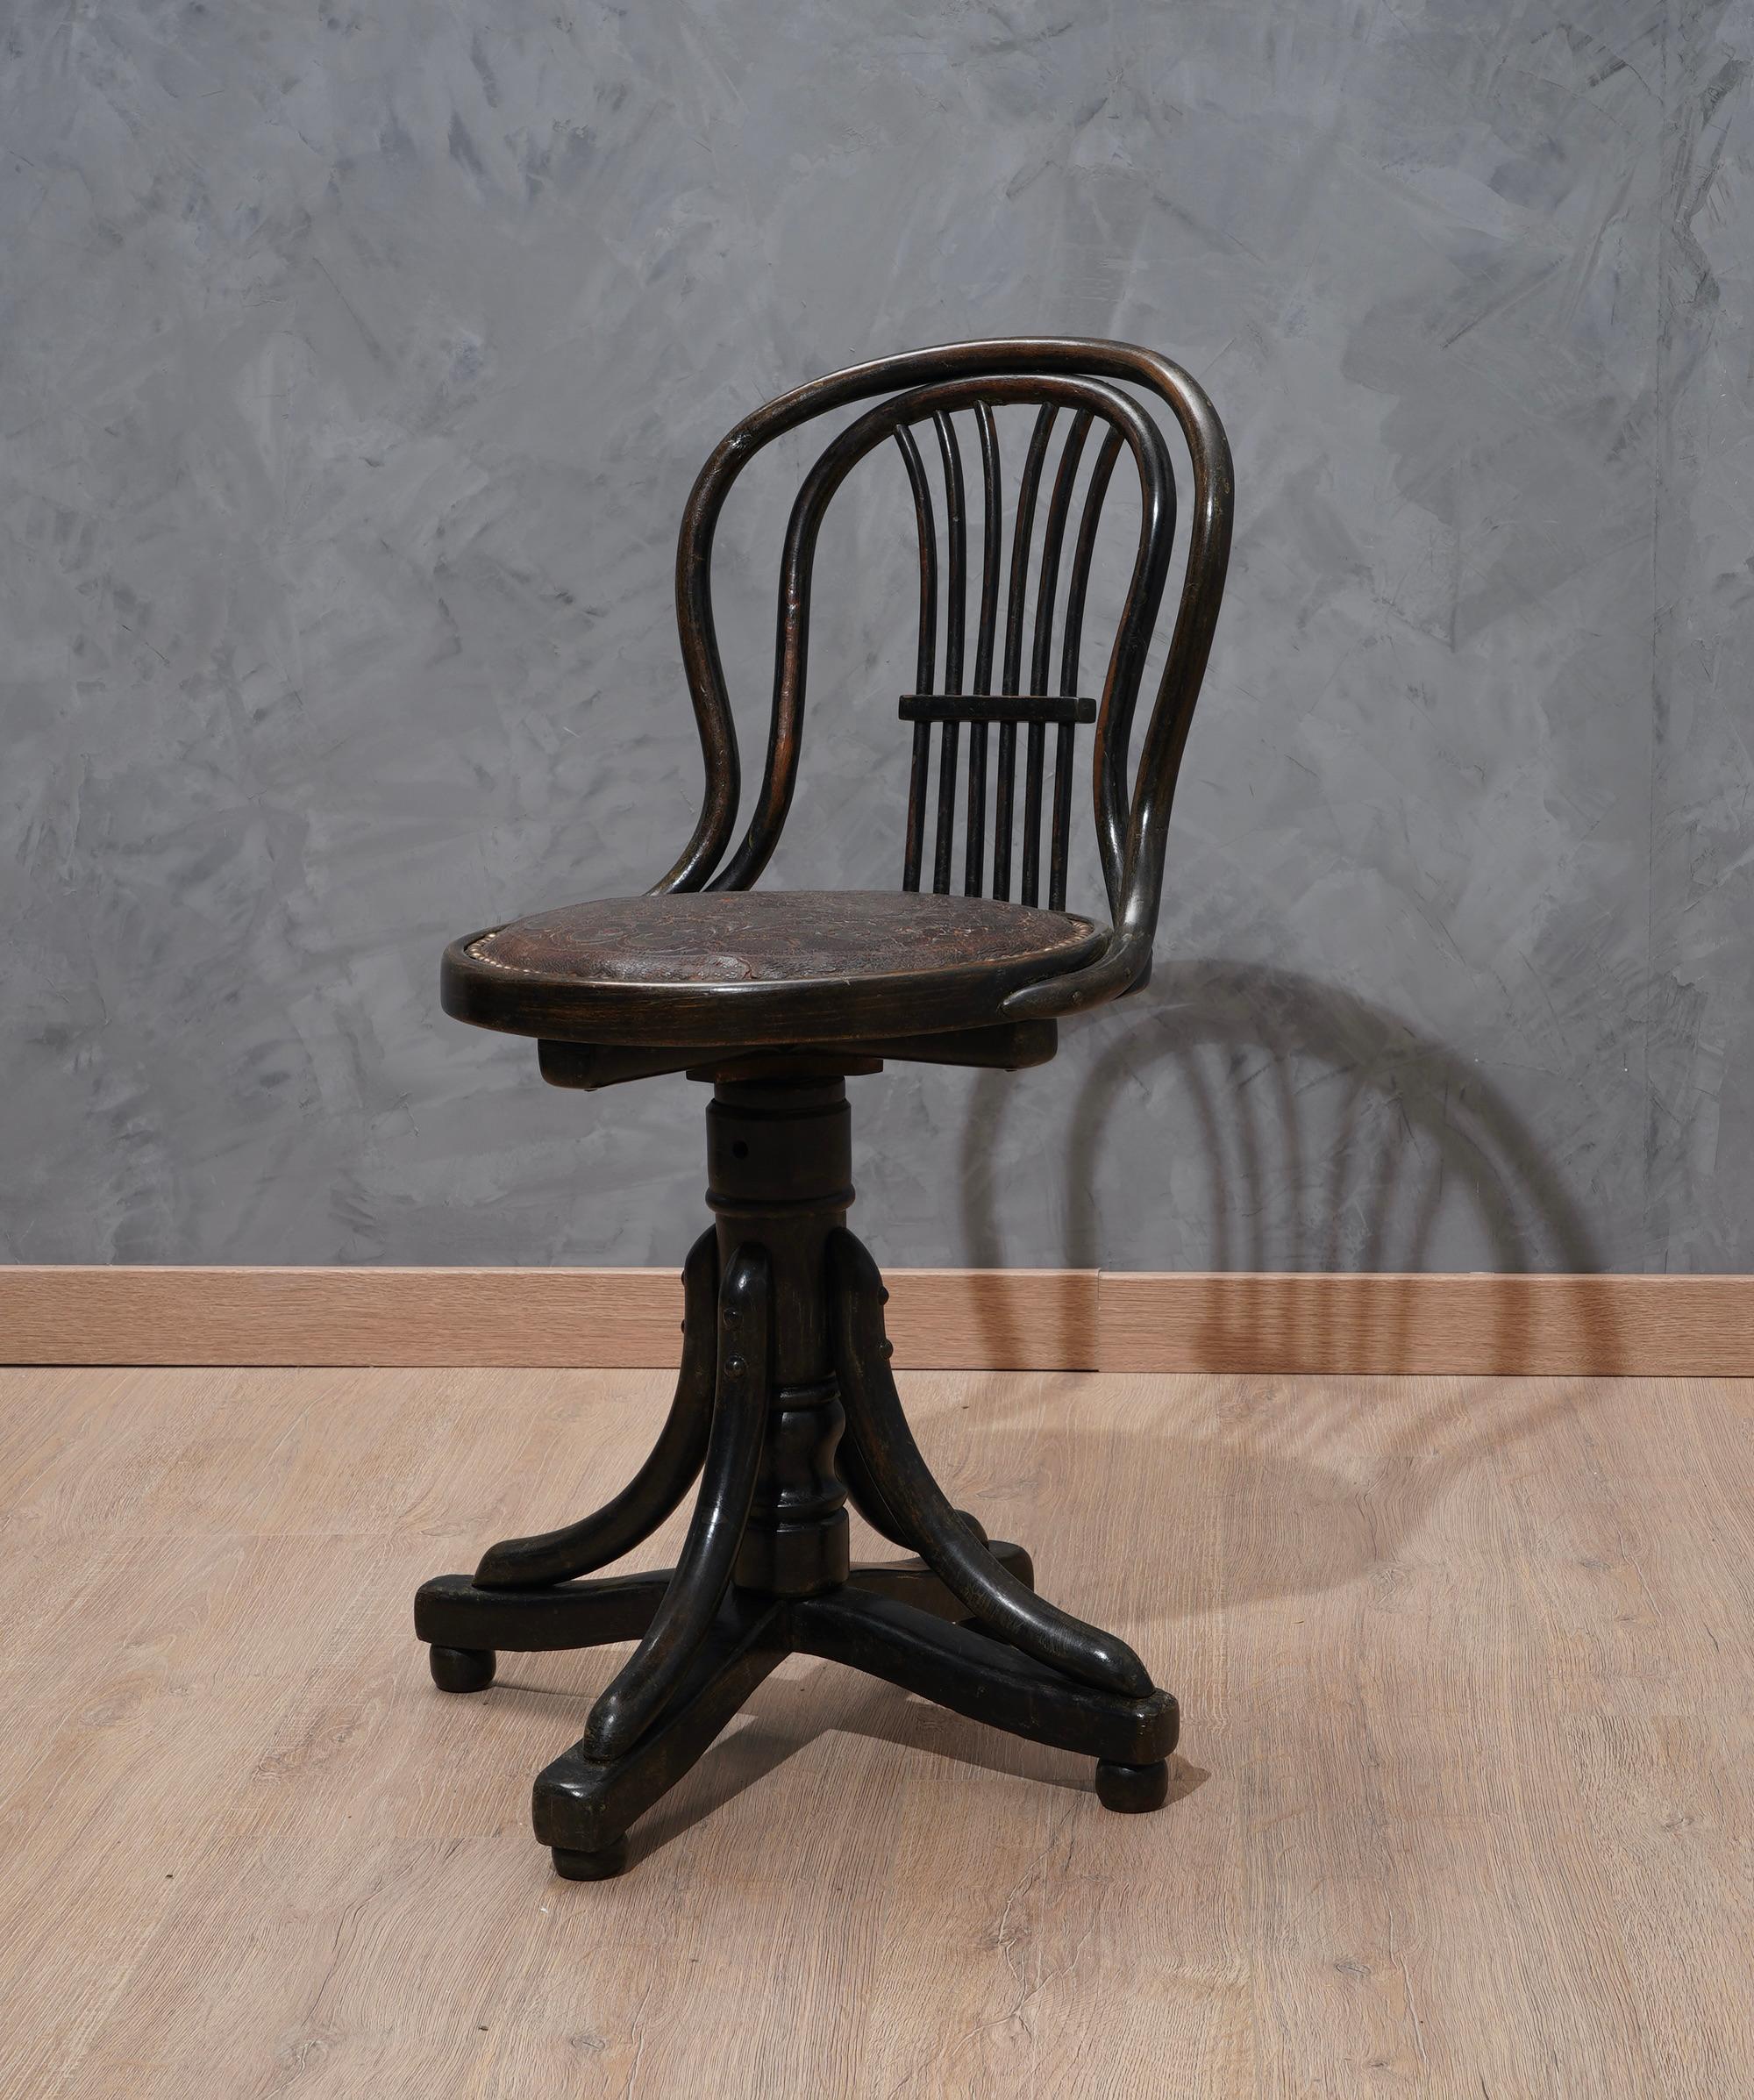 Fauteuil pivotant Thonet pour piano de la fin des années 1800.

La chaise en bois courbé est entièrement en bois poli à la gomme-laque noire. Le siège, de forme ronde, est encore recouvert de son cuir d'origine et, tout autour, de ses boutons